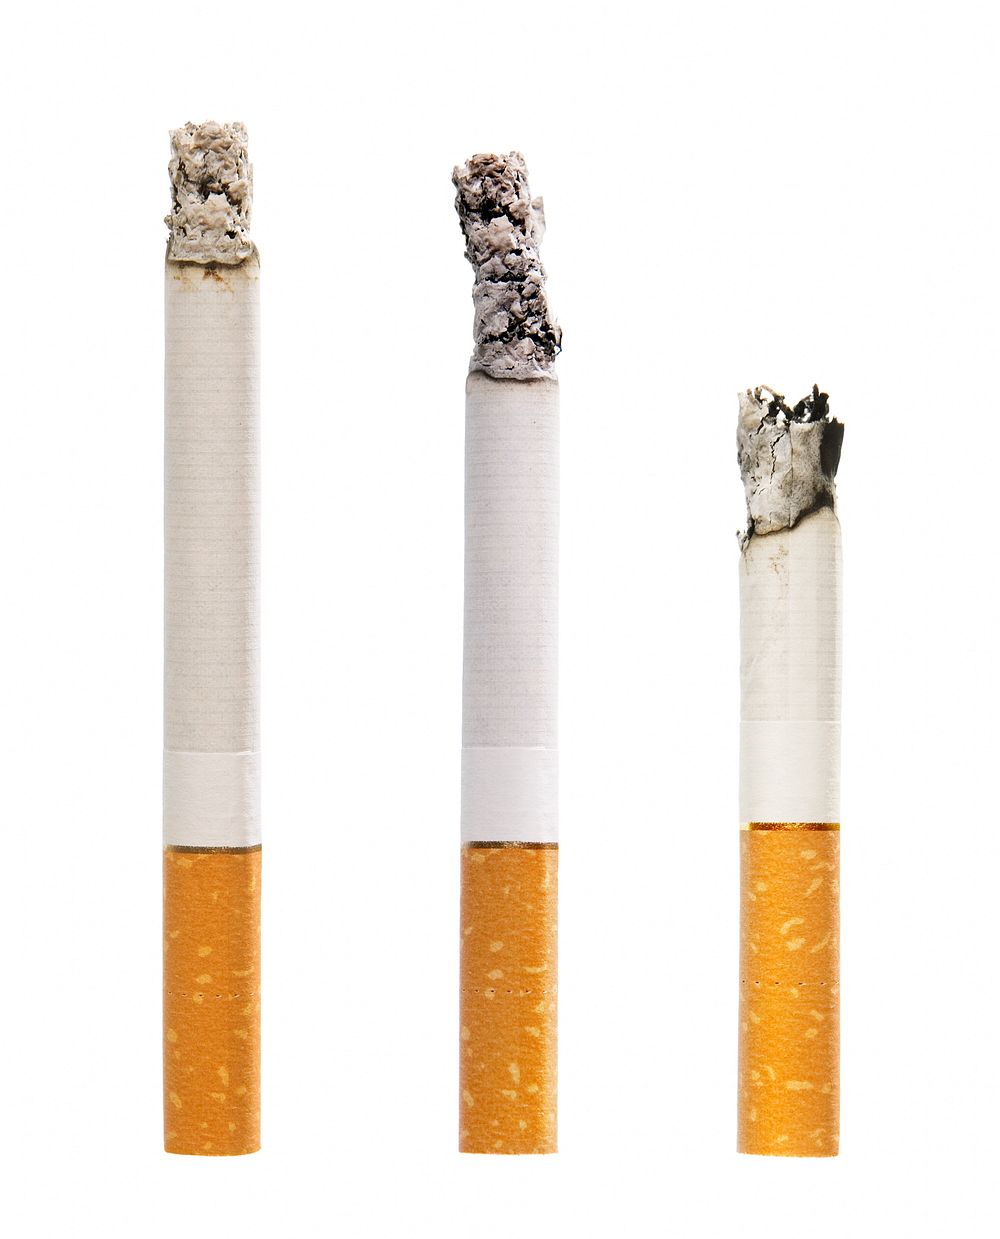 Free close up burning cigarettes image, public domain CC0 photo.